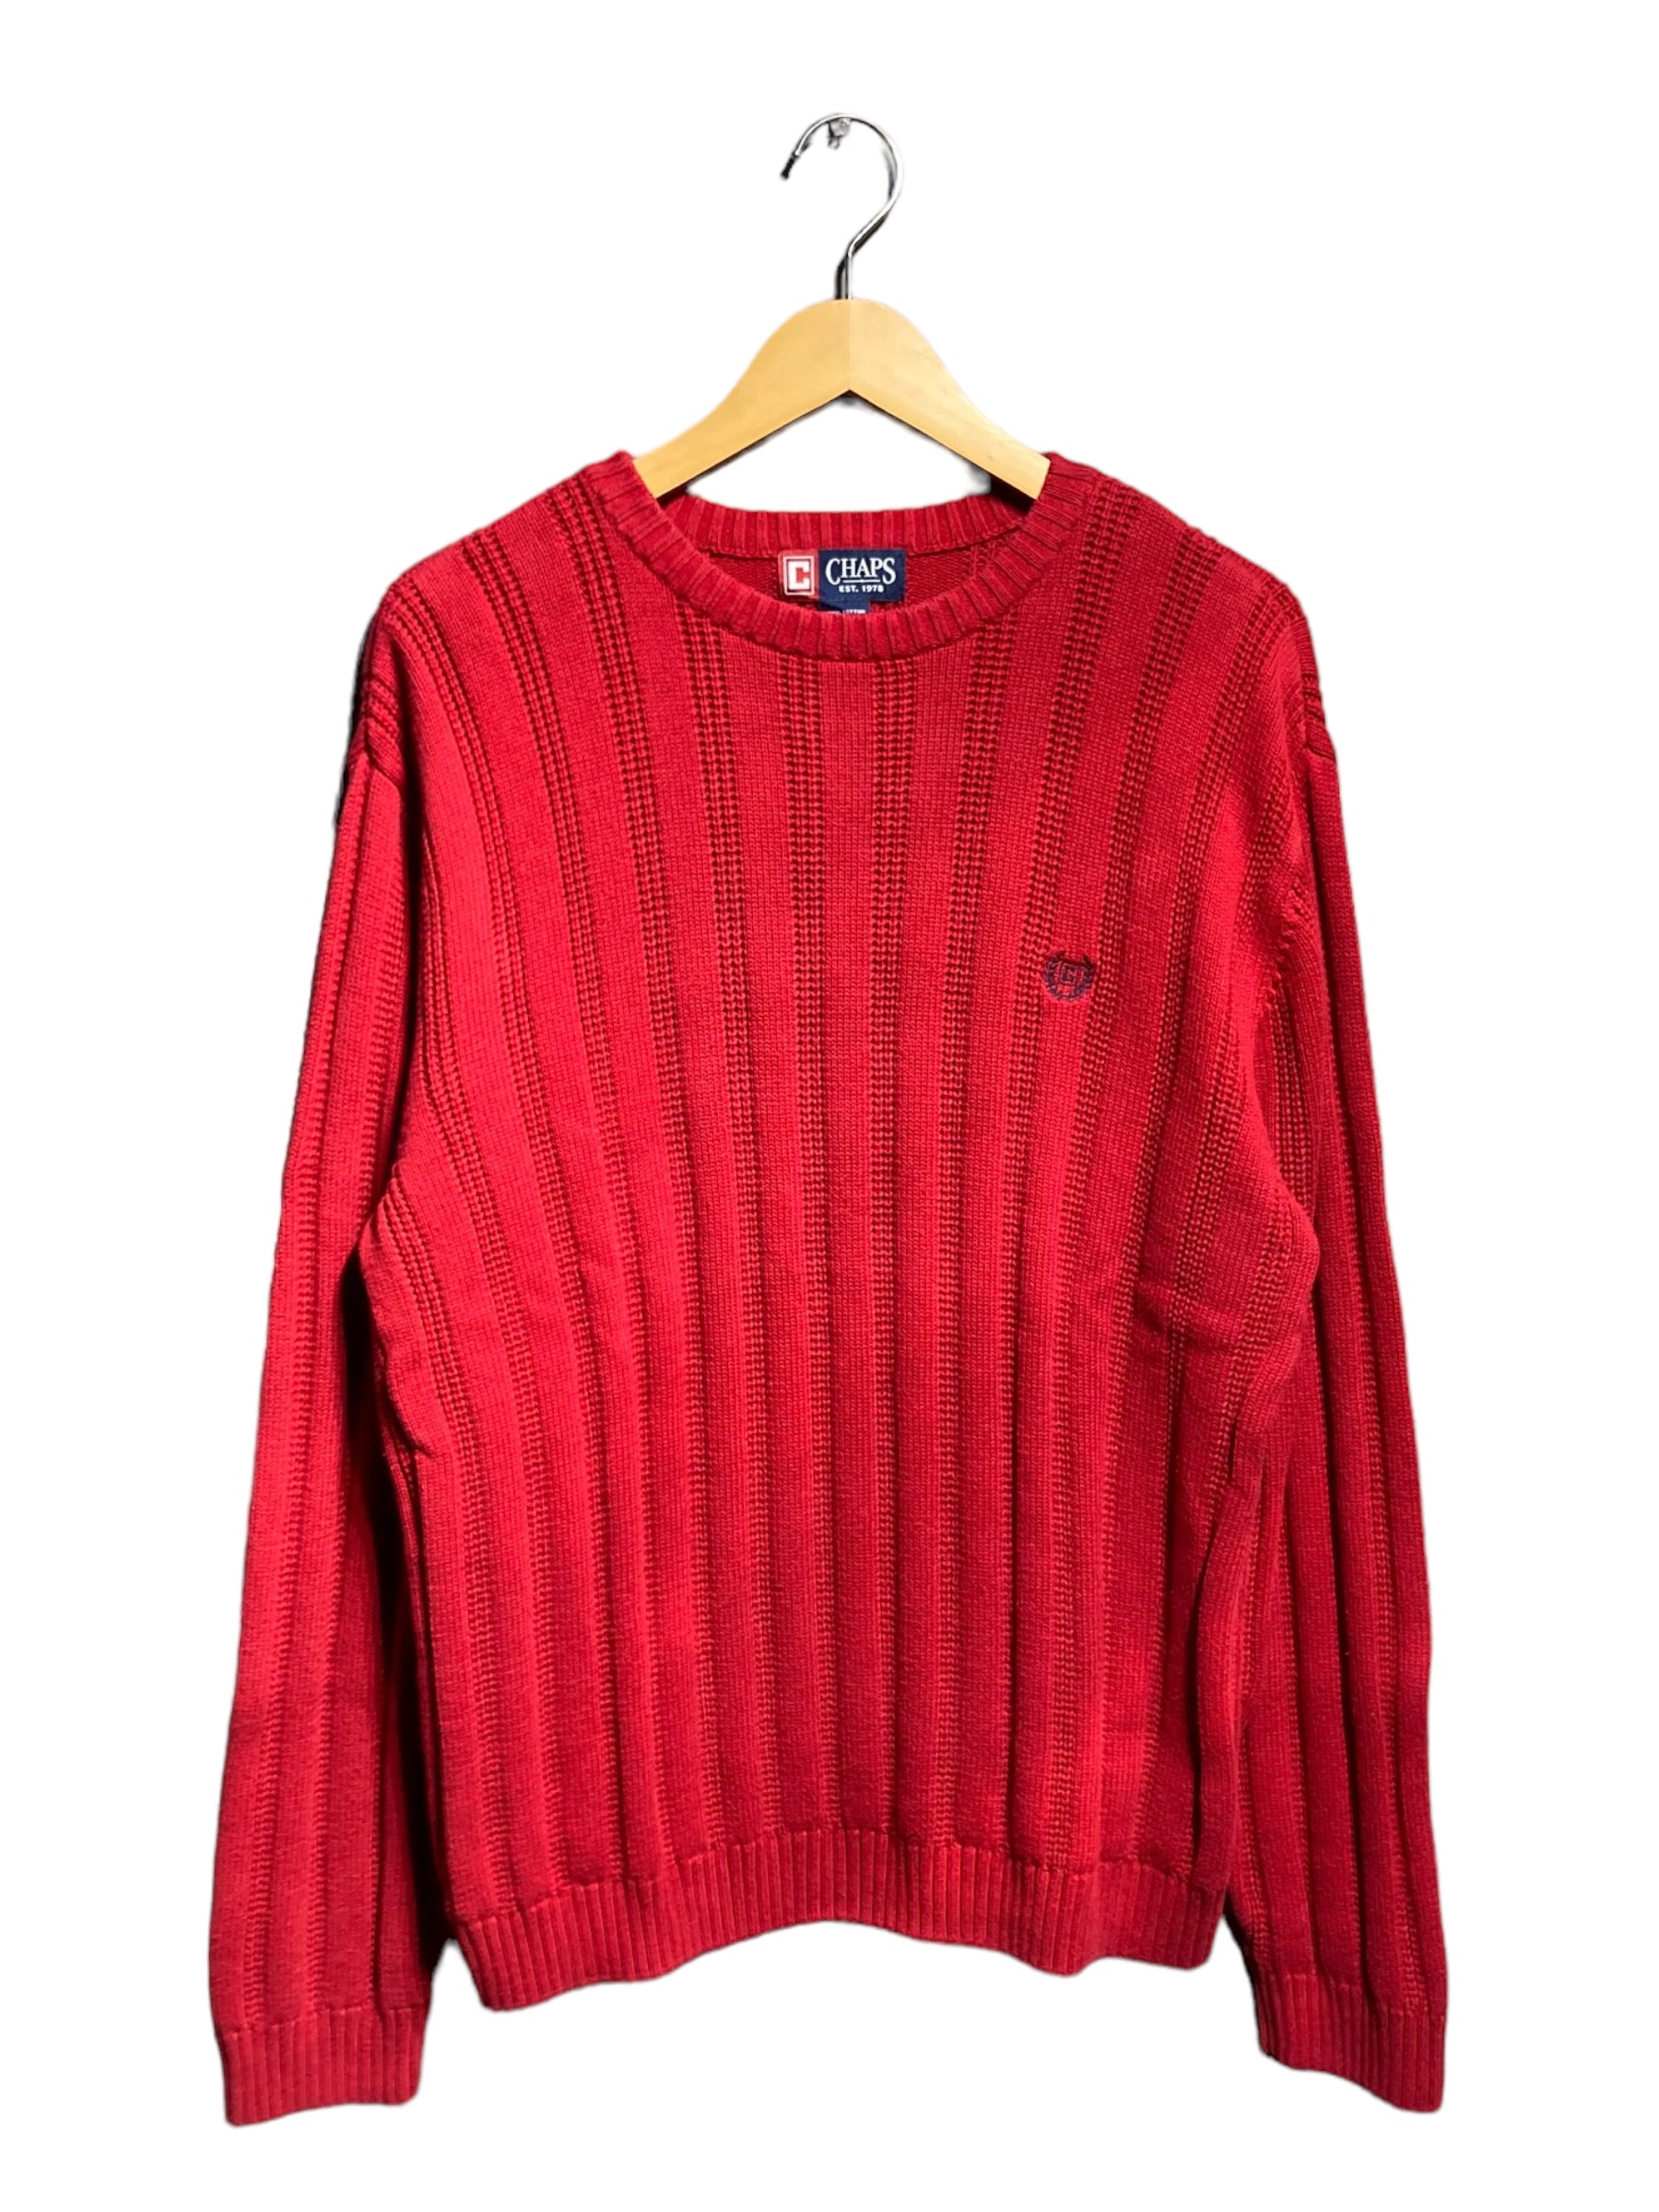 90s CHAPS チャップス knit sweater ニット セーター デザイン